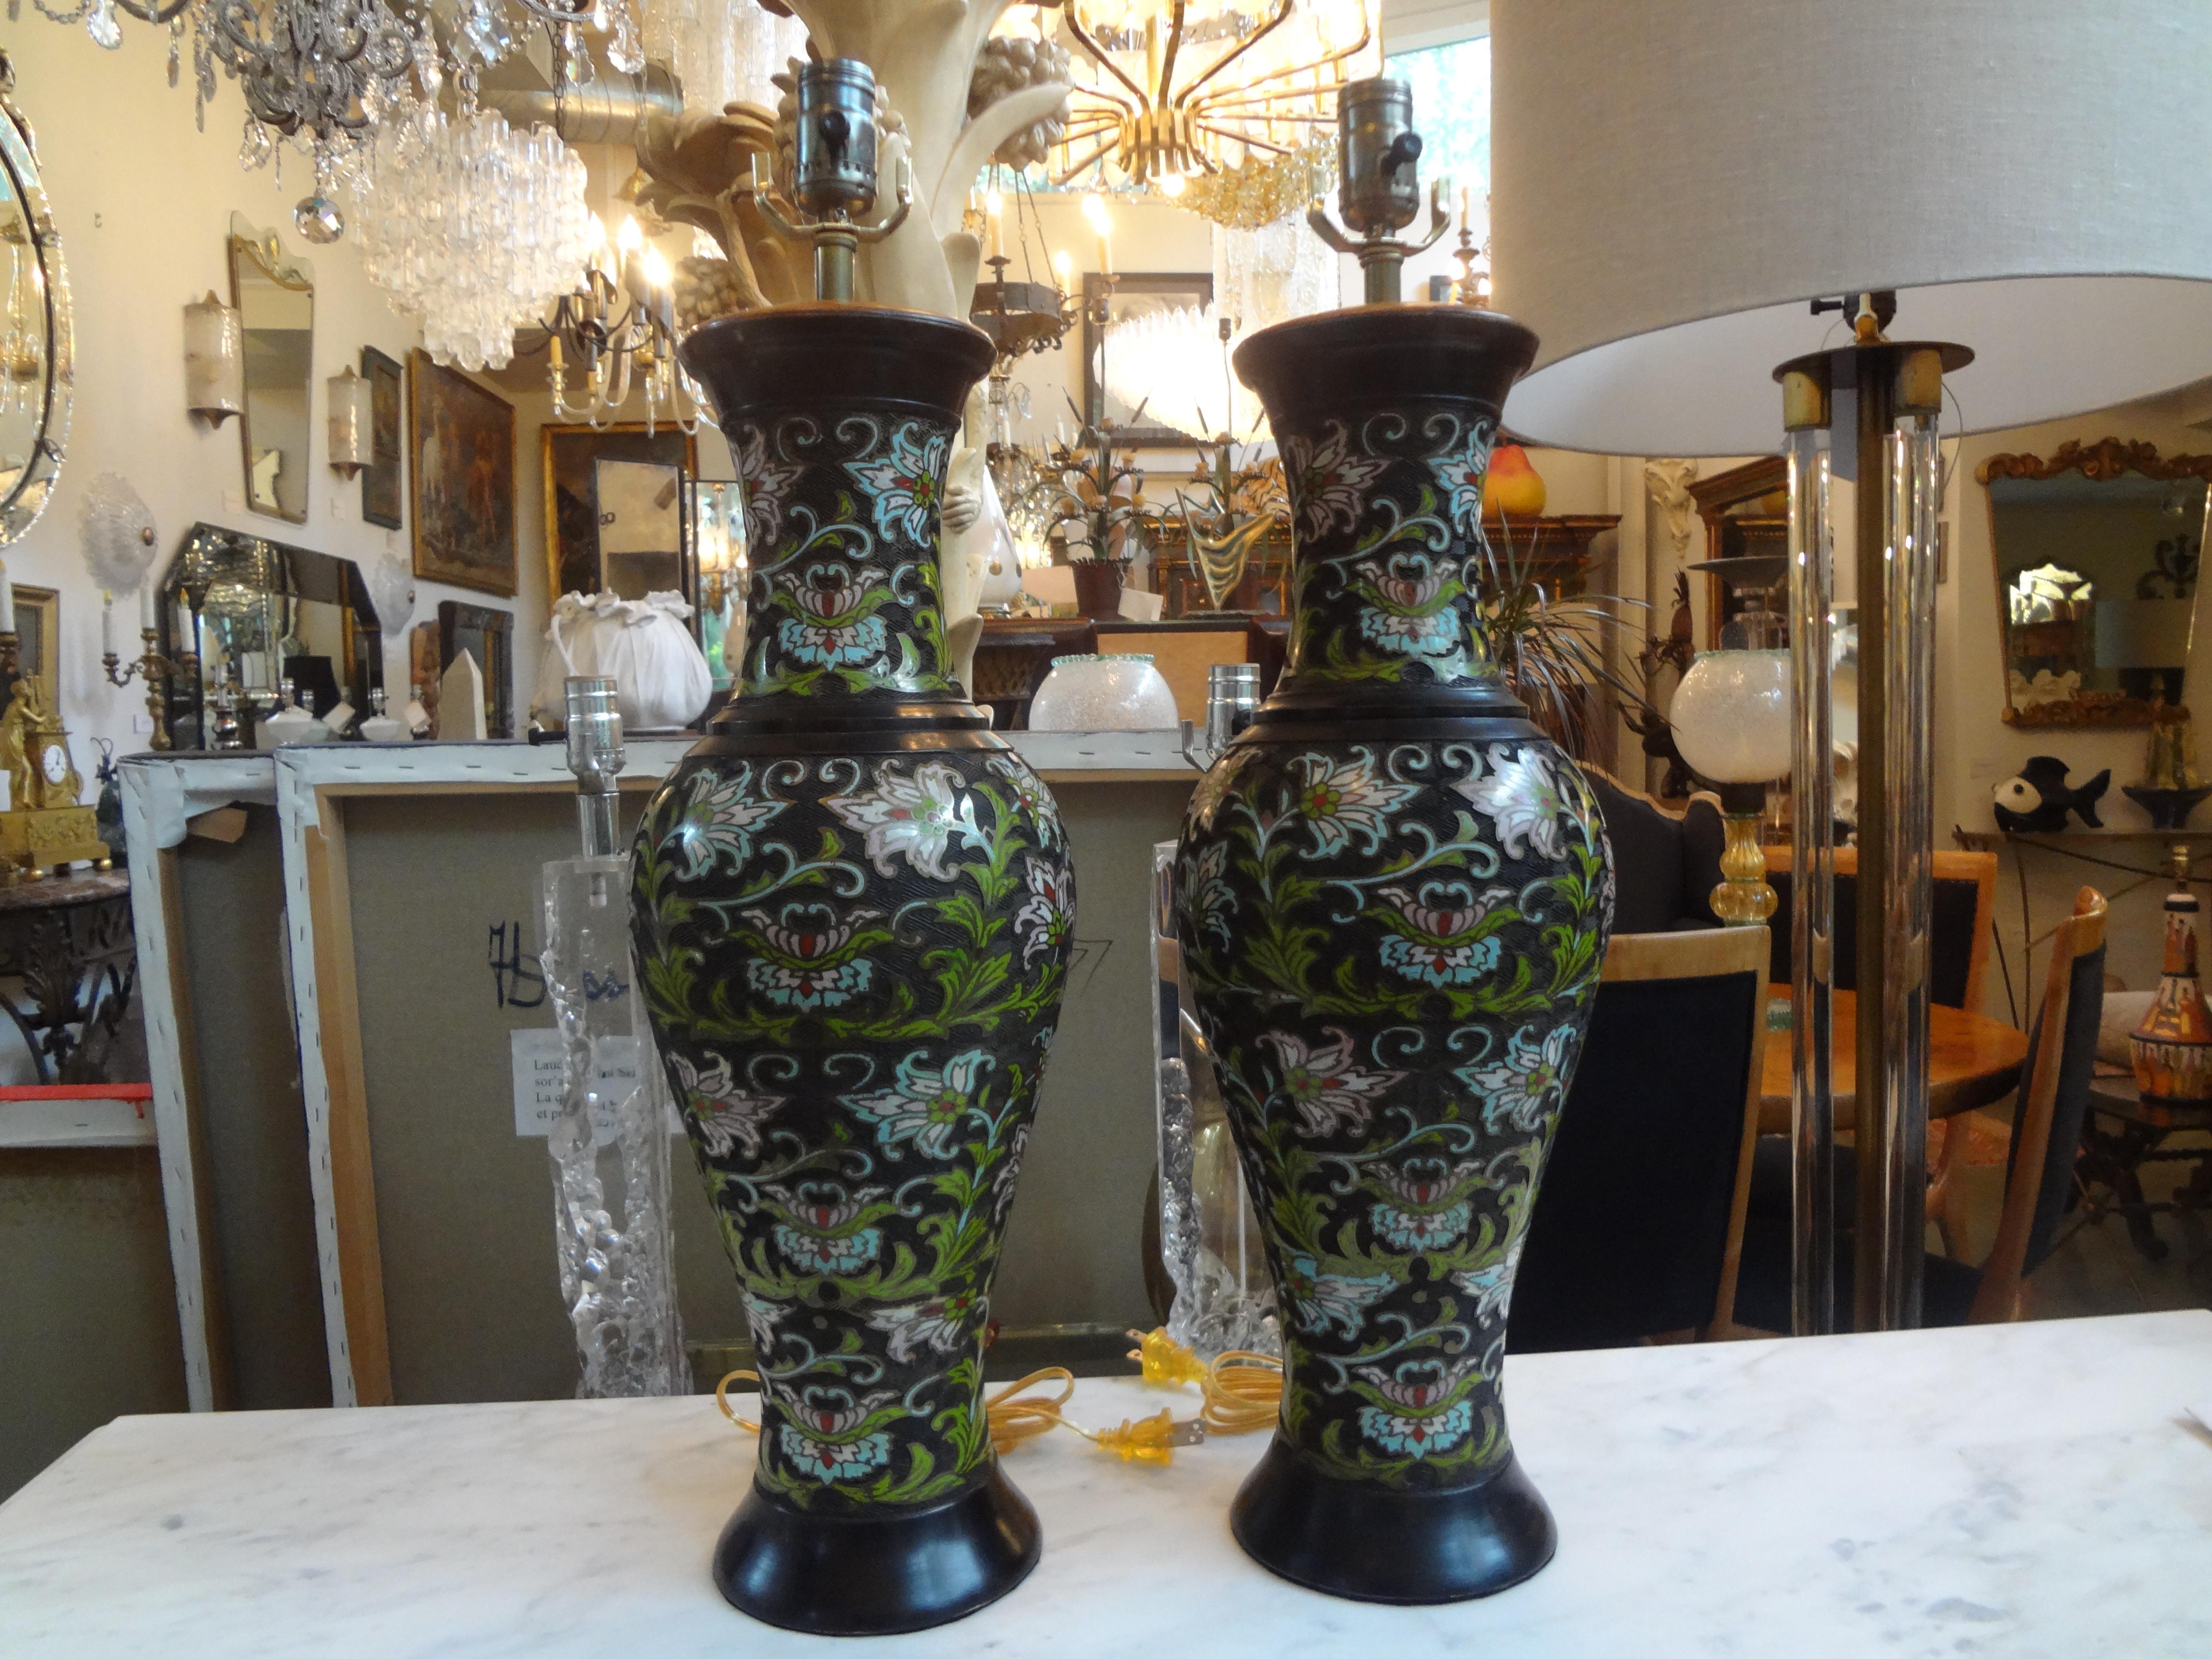 Belle paire de lampes de table chinoises anciennes en bronze champlevé ou cloisonné. Les lampes champlevées proposées sont exécutées dans un joli motif floral de belles teintes, notamment chartreuse, turquoise, roses et blanches. Ces lampes sont en